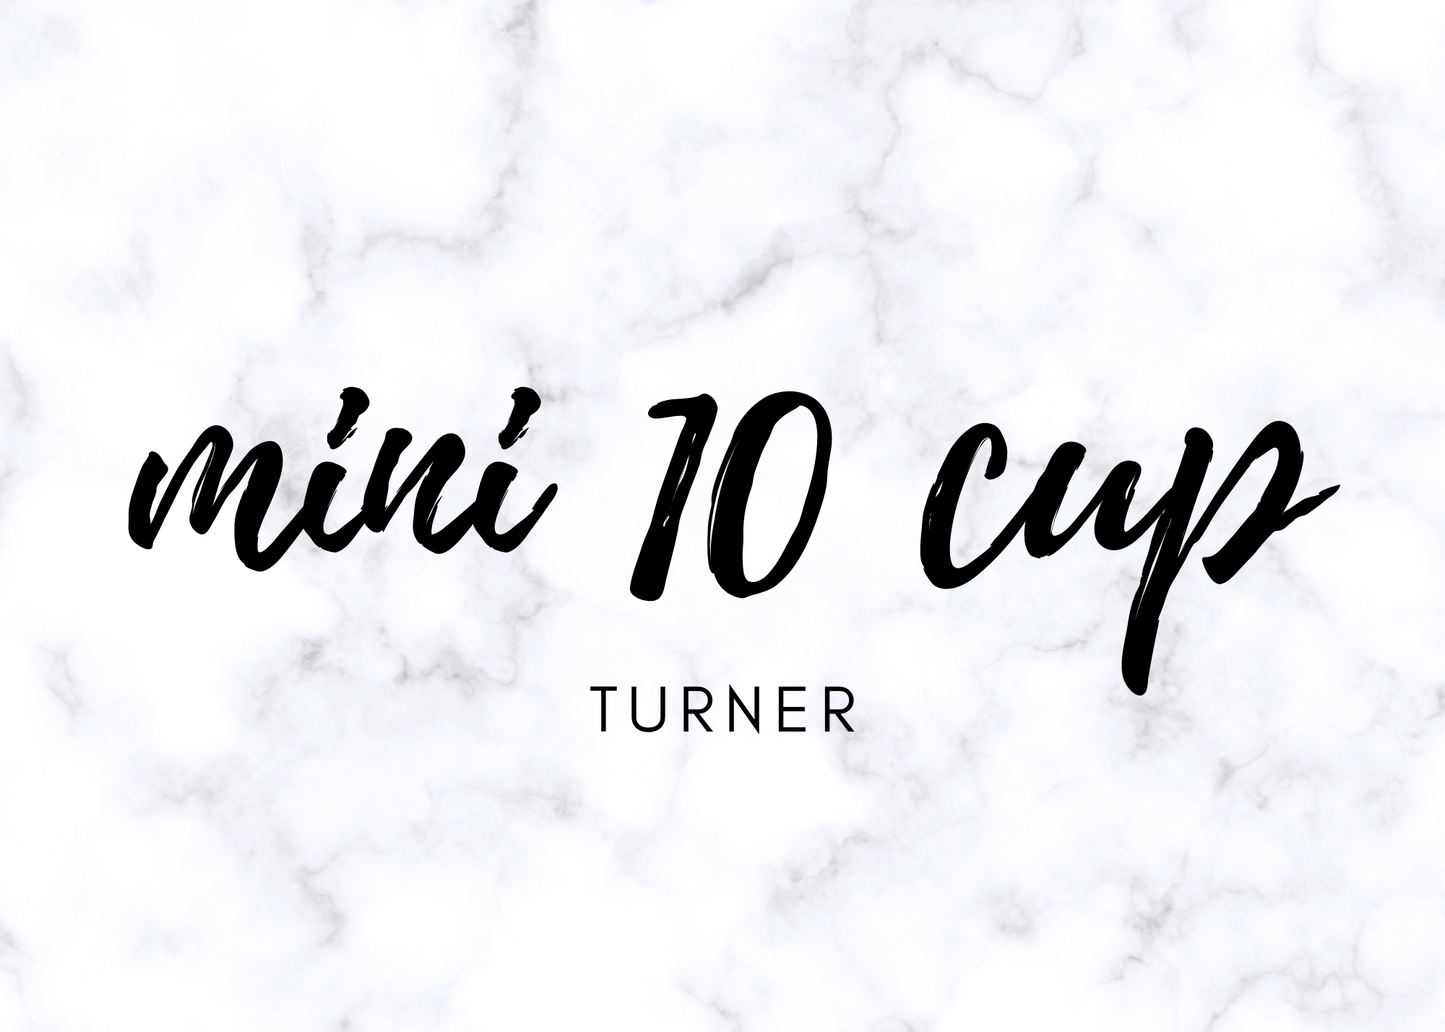 MINI TEN (10) Cup Turner